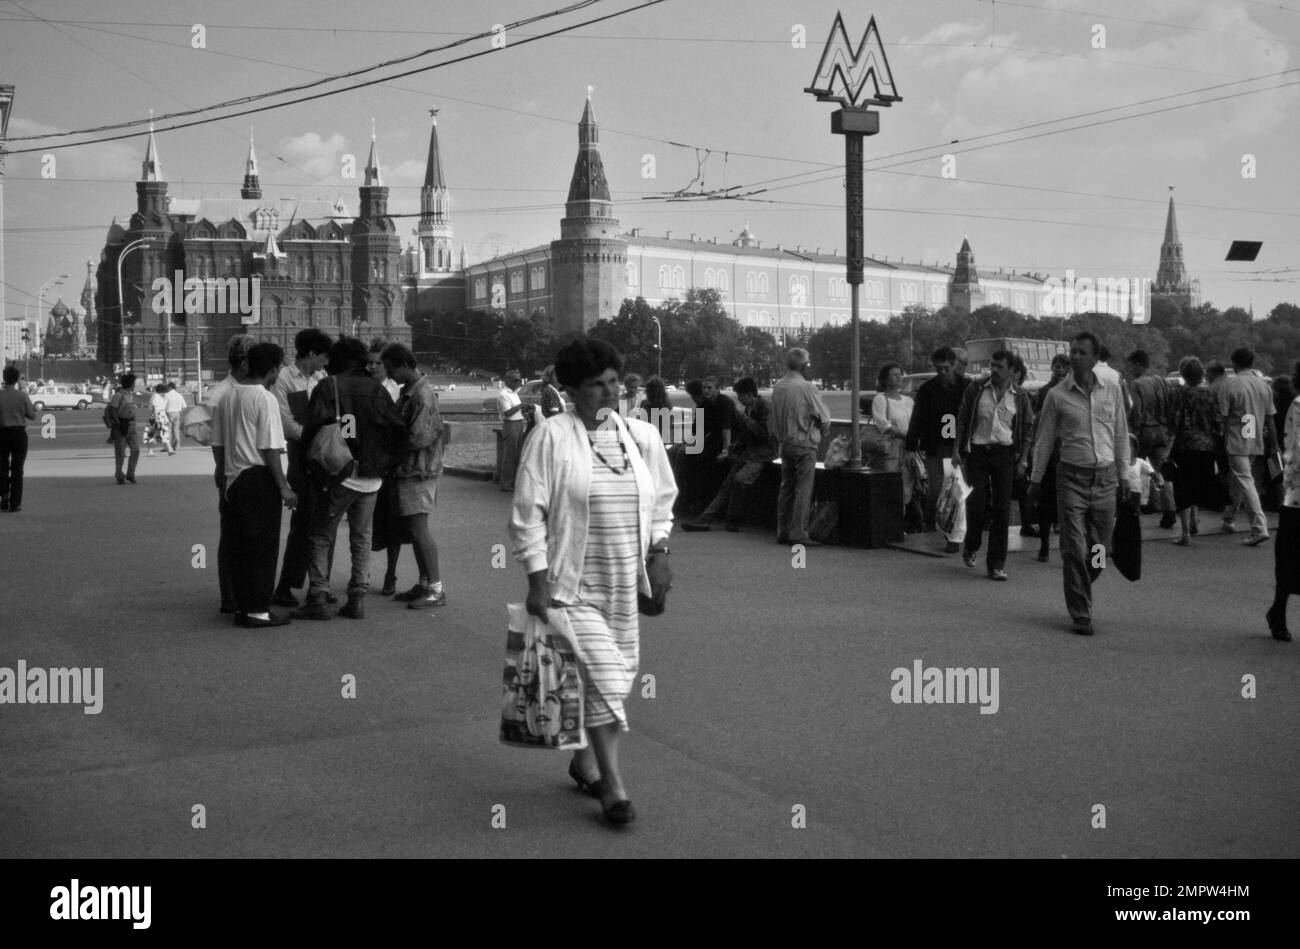 Historischer Archive Street Blick Auf Russische Fußgänger, Muscovites Walking In Manege Square Neben Dem Eingang Zur Moskauer Metro Mit Original Metro Schild. Das Staatliche Historische Museum und der Kreml sind im Hintergrund zu sehen, Moskau, Russland 1990 Stockfoto